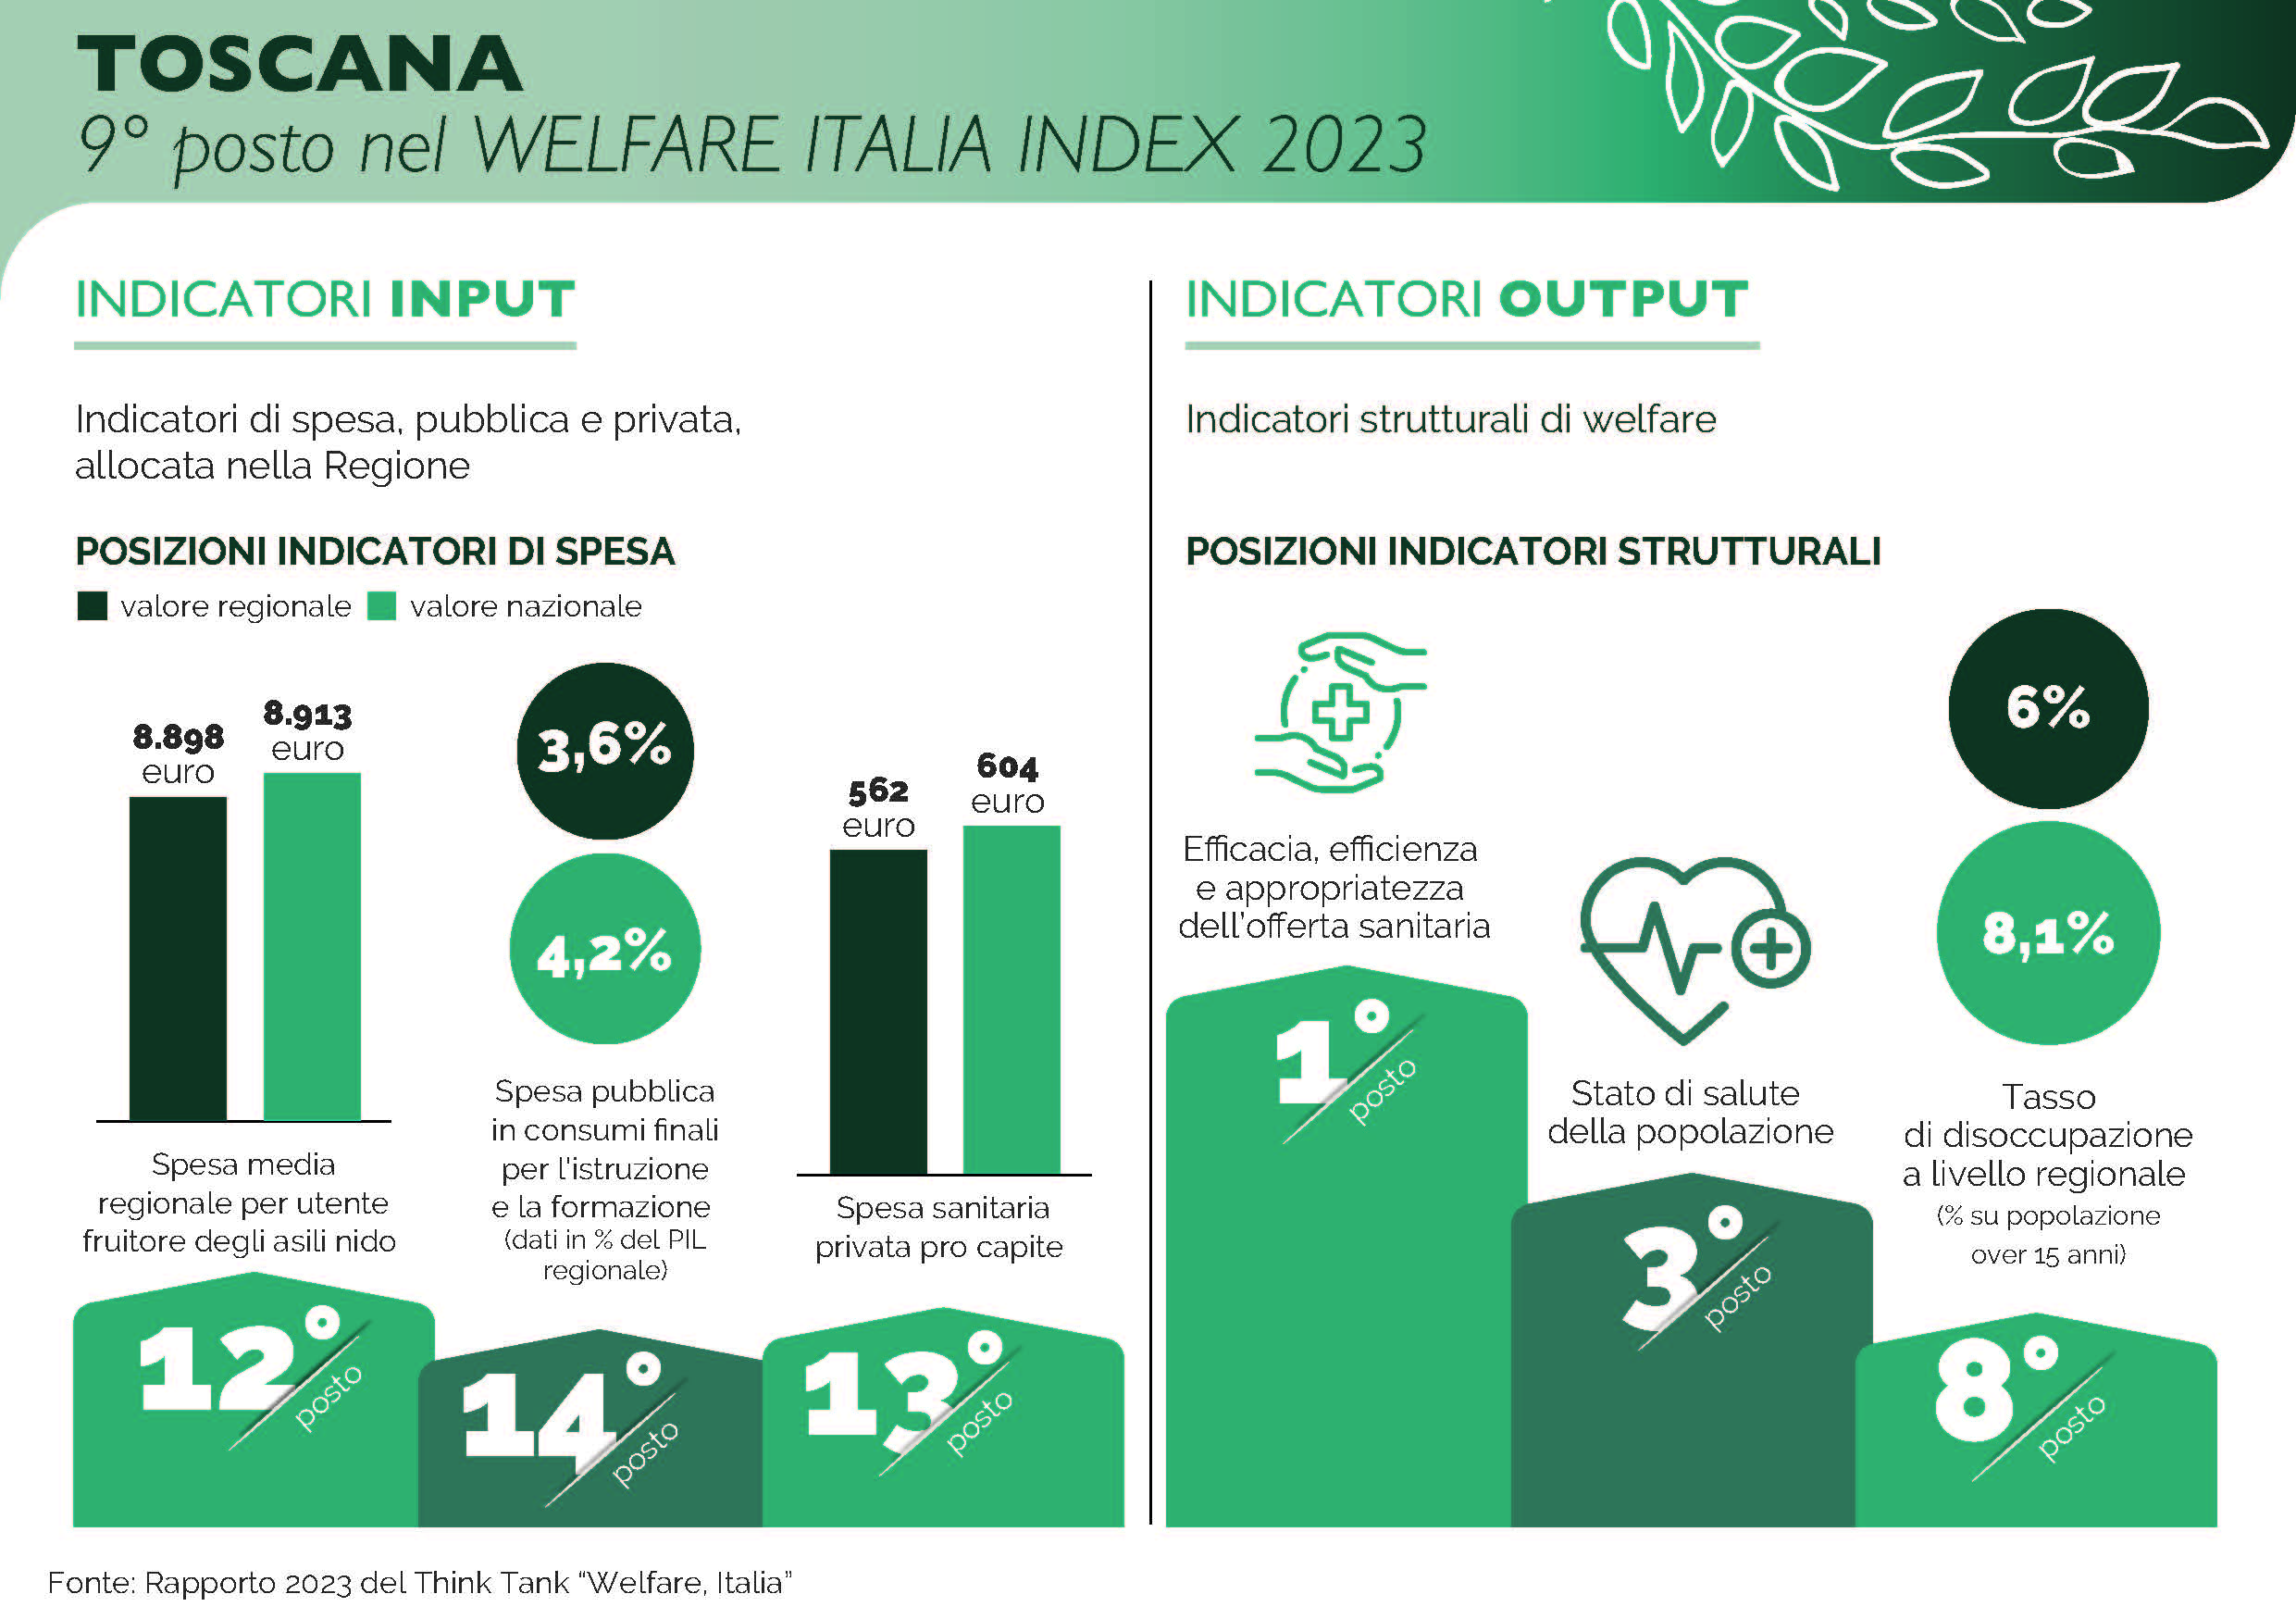 LA TOSCANA È AL 9° POSTO NEL WELFARE ITALIA INDEX 2023